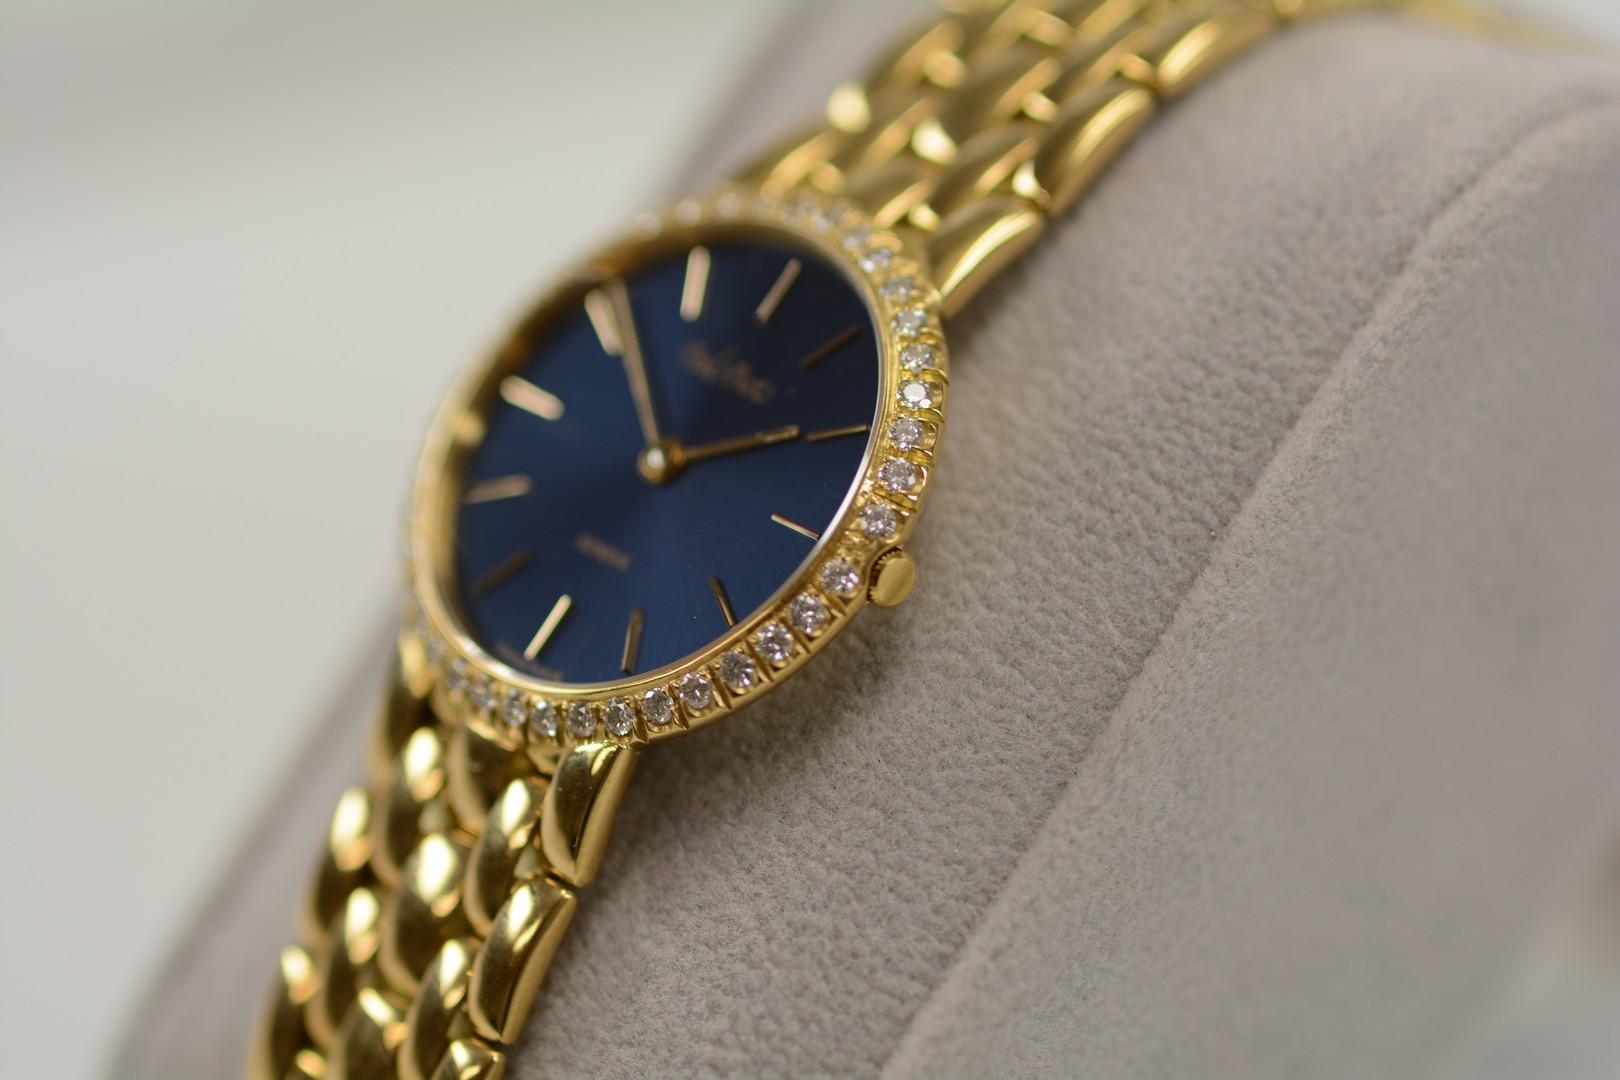 Paul Picot / Diamond - Lady's Yellow gold Wrist Watch - Image 11 of 16